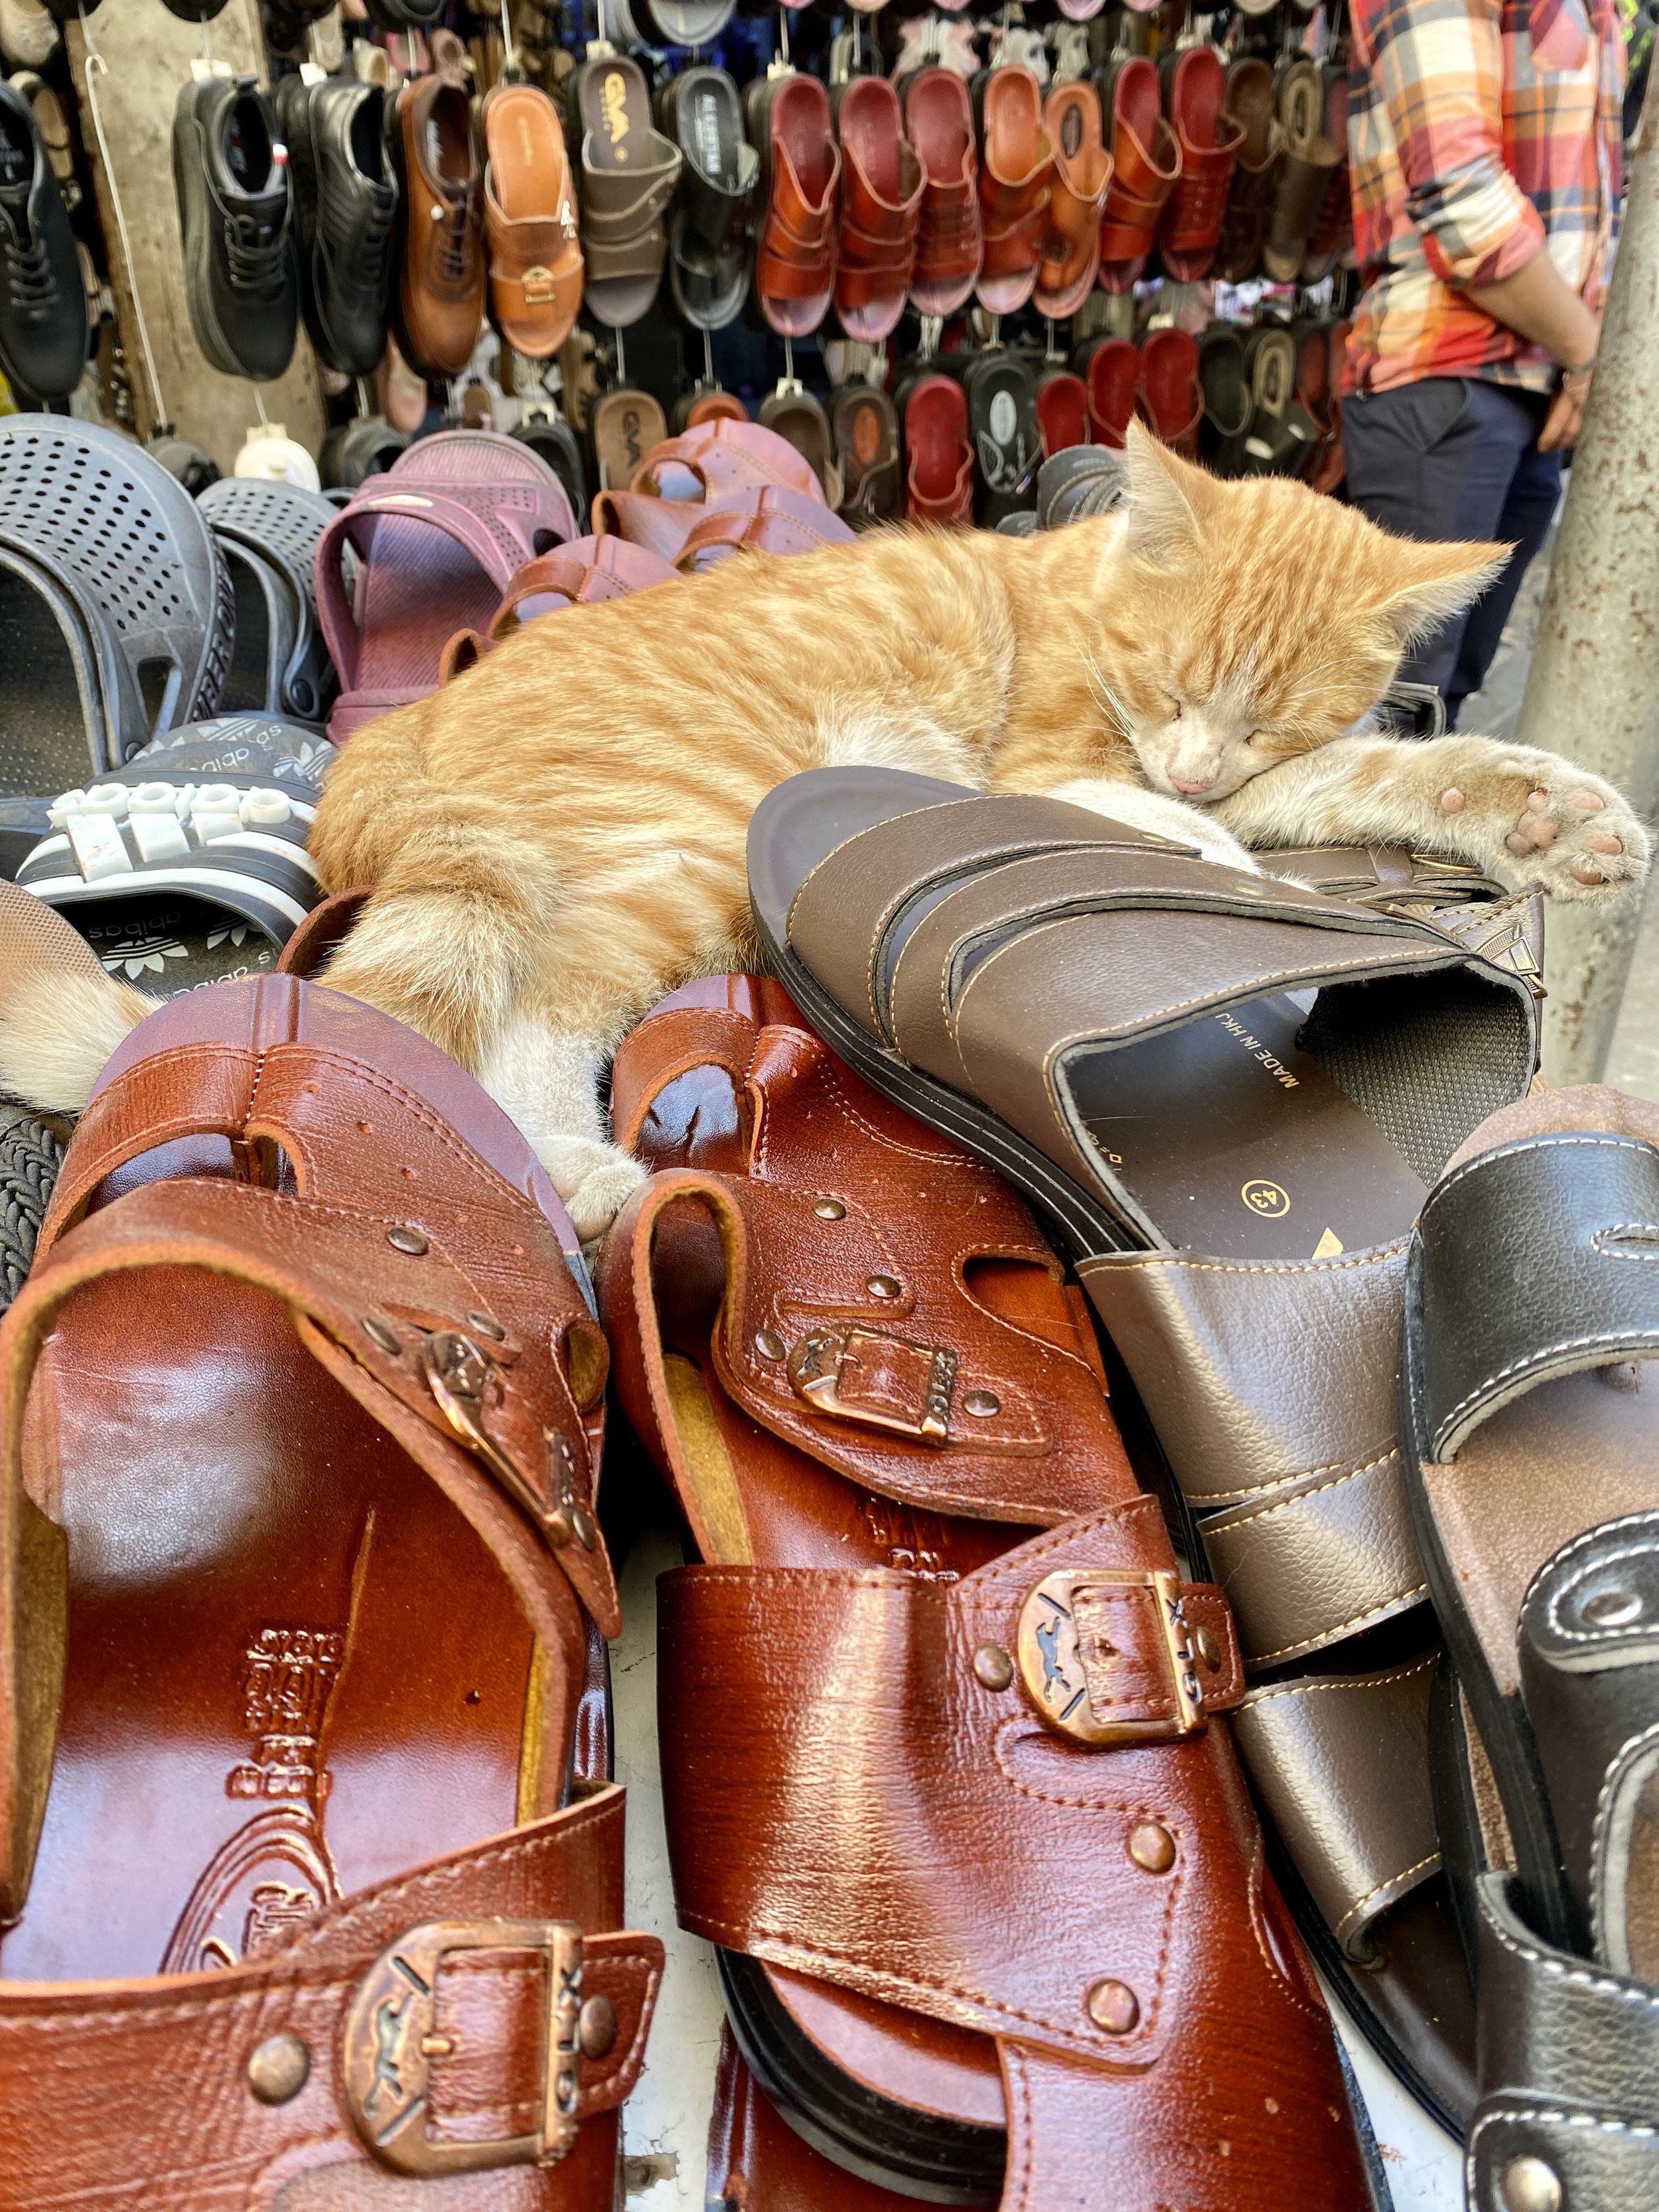 Shoe Cat